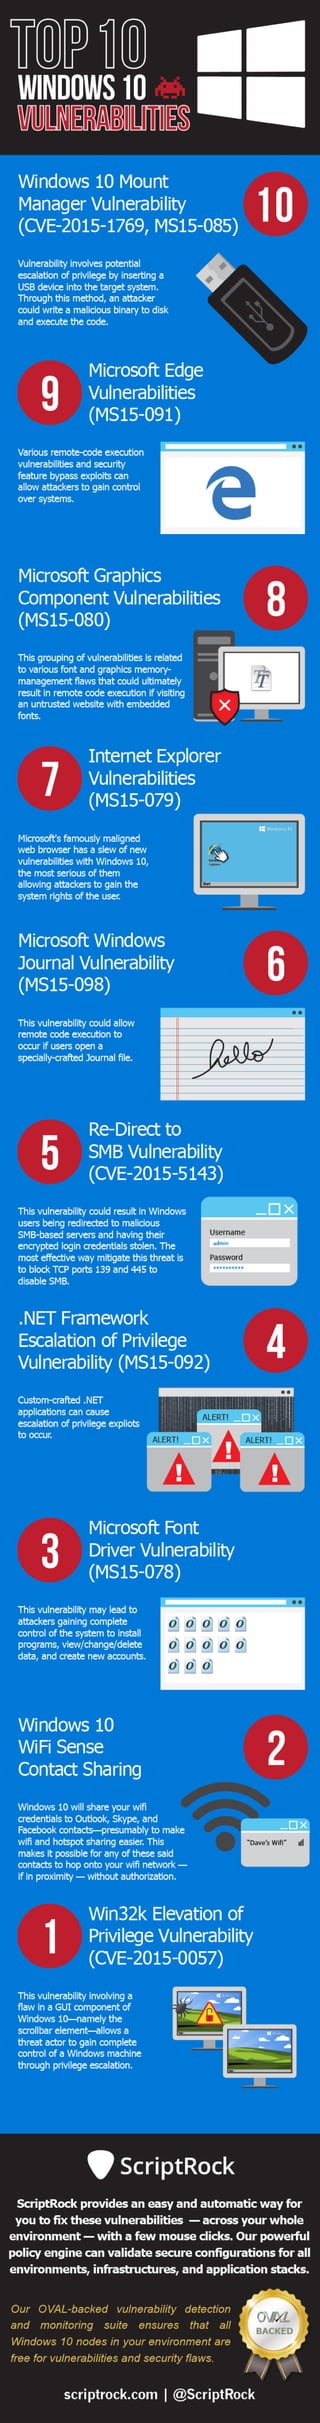 Top 10 Windows Ten Vulnerabilities - Infographic